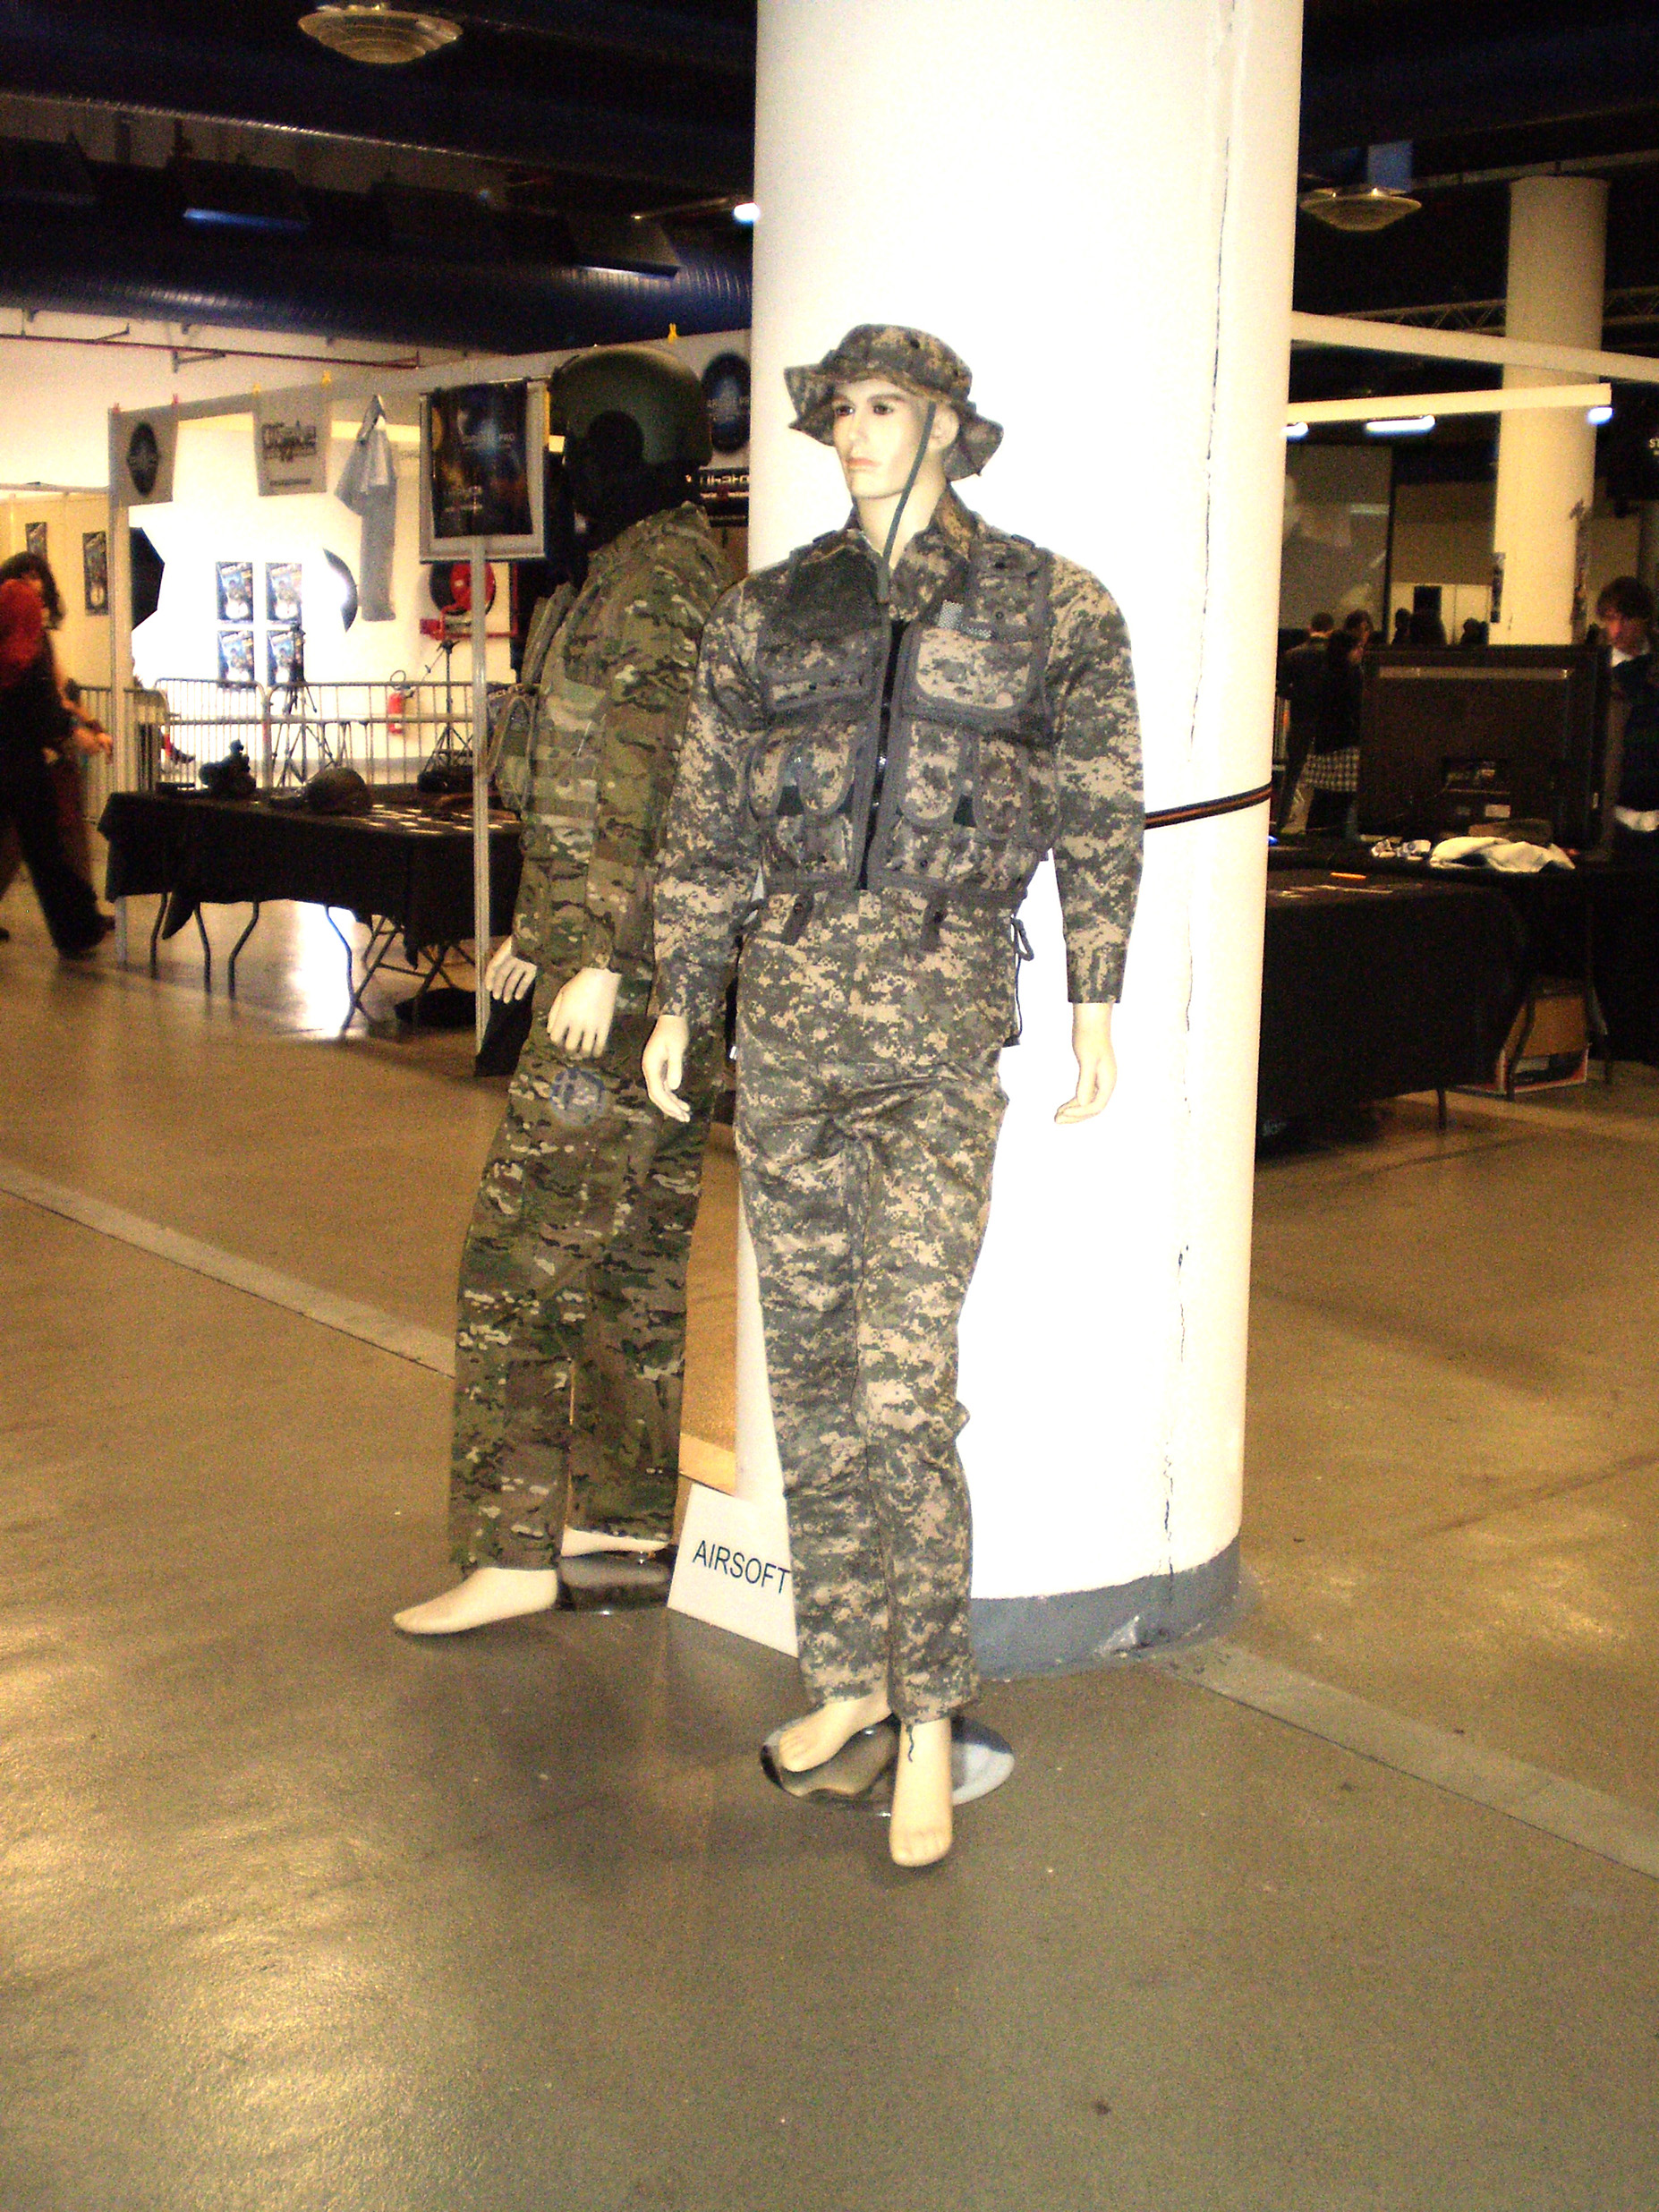 Achetez des répliques d'uniformes des forces armées américaines.